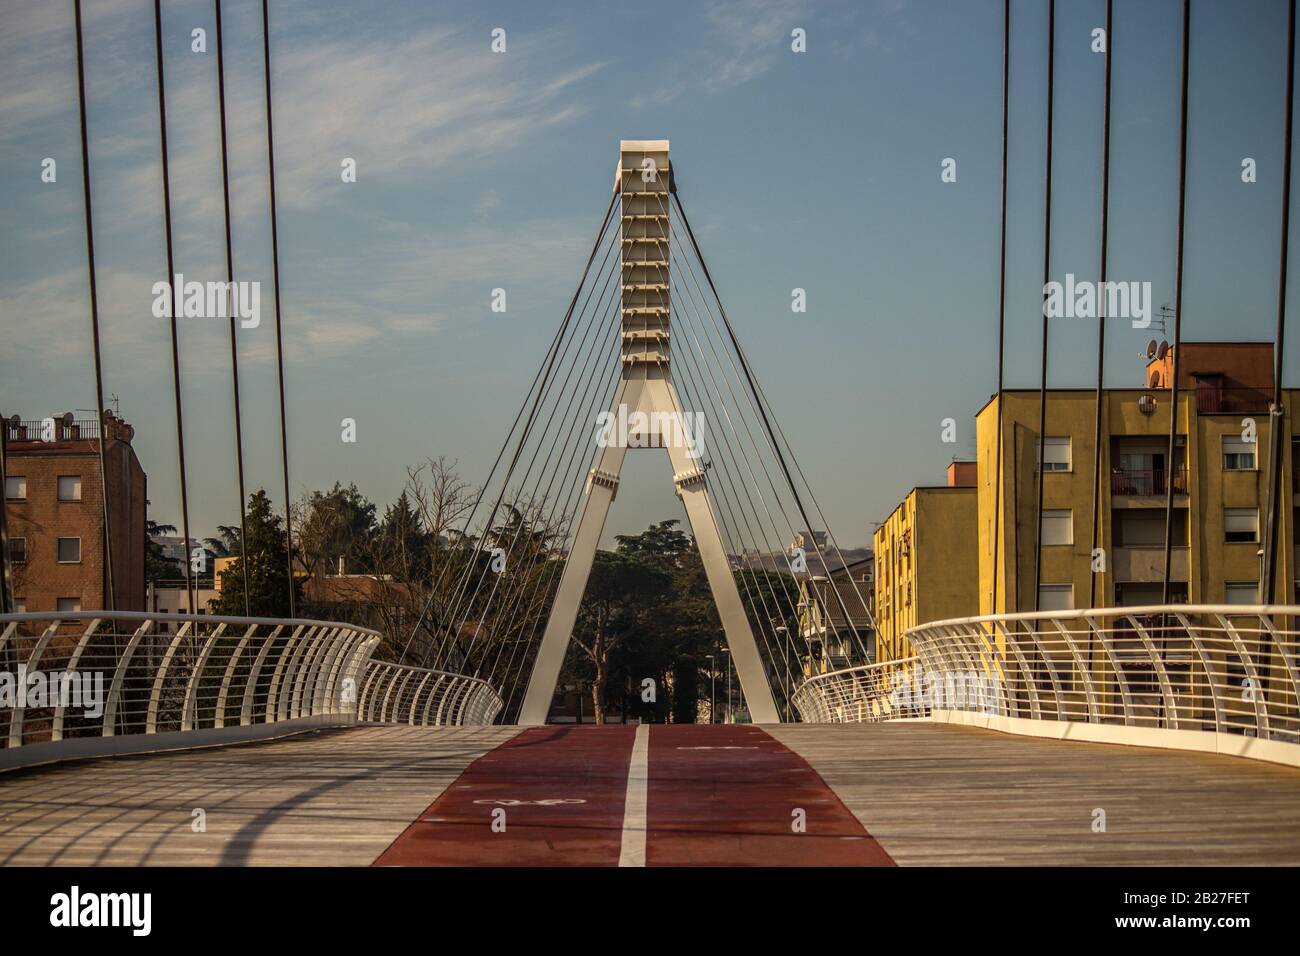 new cycle-pedestrian educational bridge S. Maria degli Angeli - Rione Libertà - Benevento Stock Photo